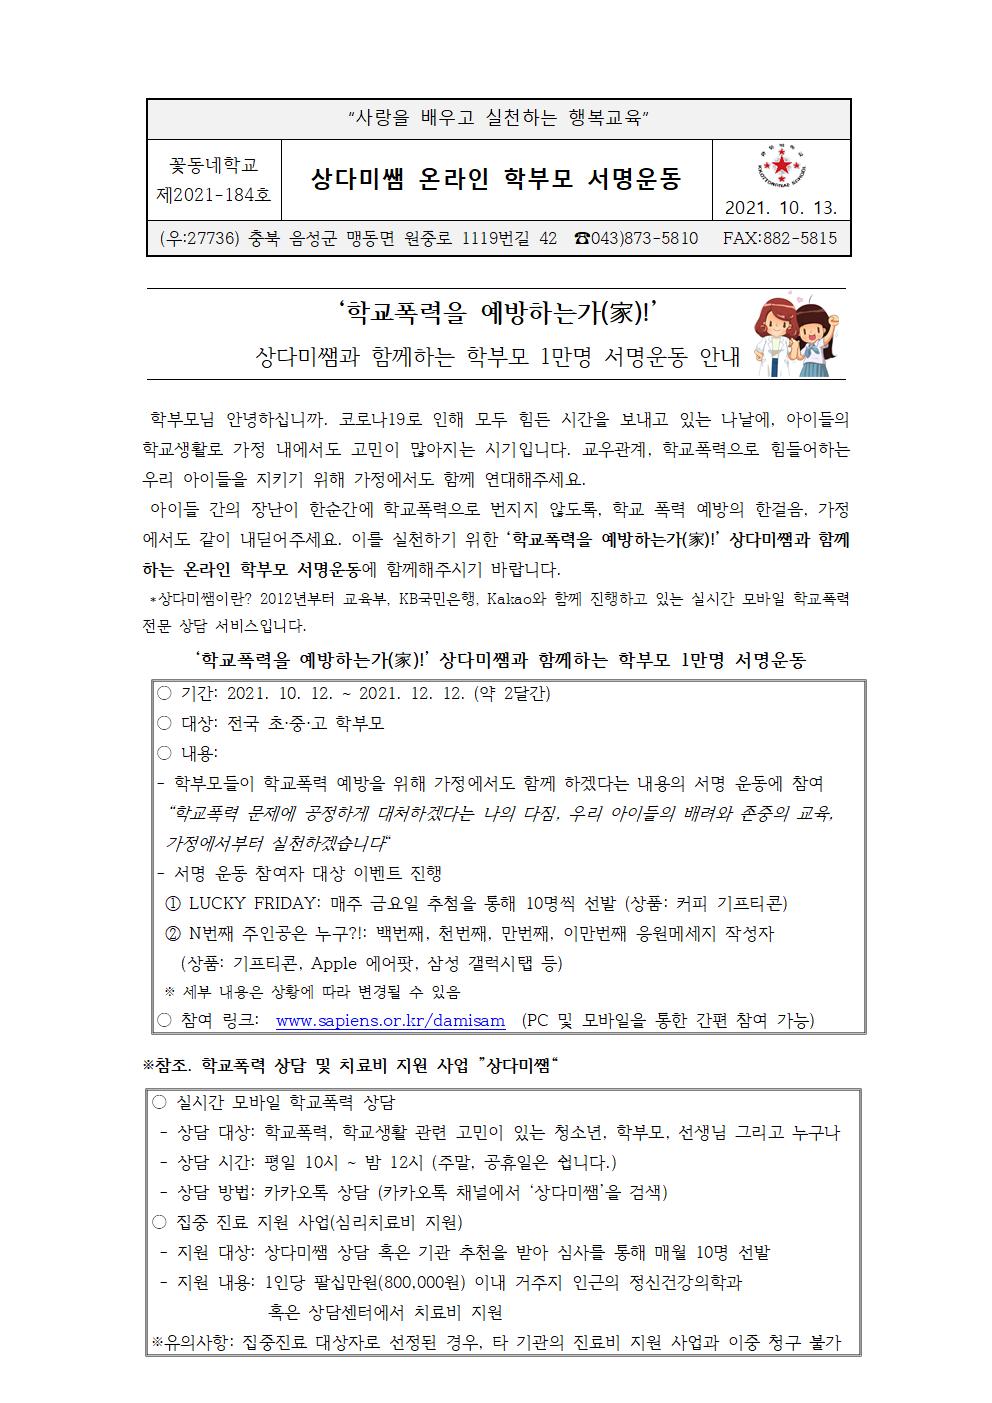 상다미쌤과 함께하는 학부모 1만명 서명운동(가정통신문)001